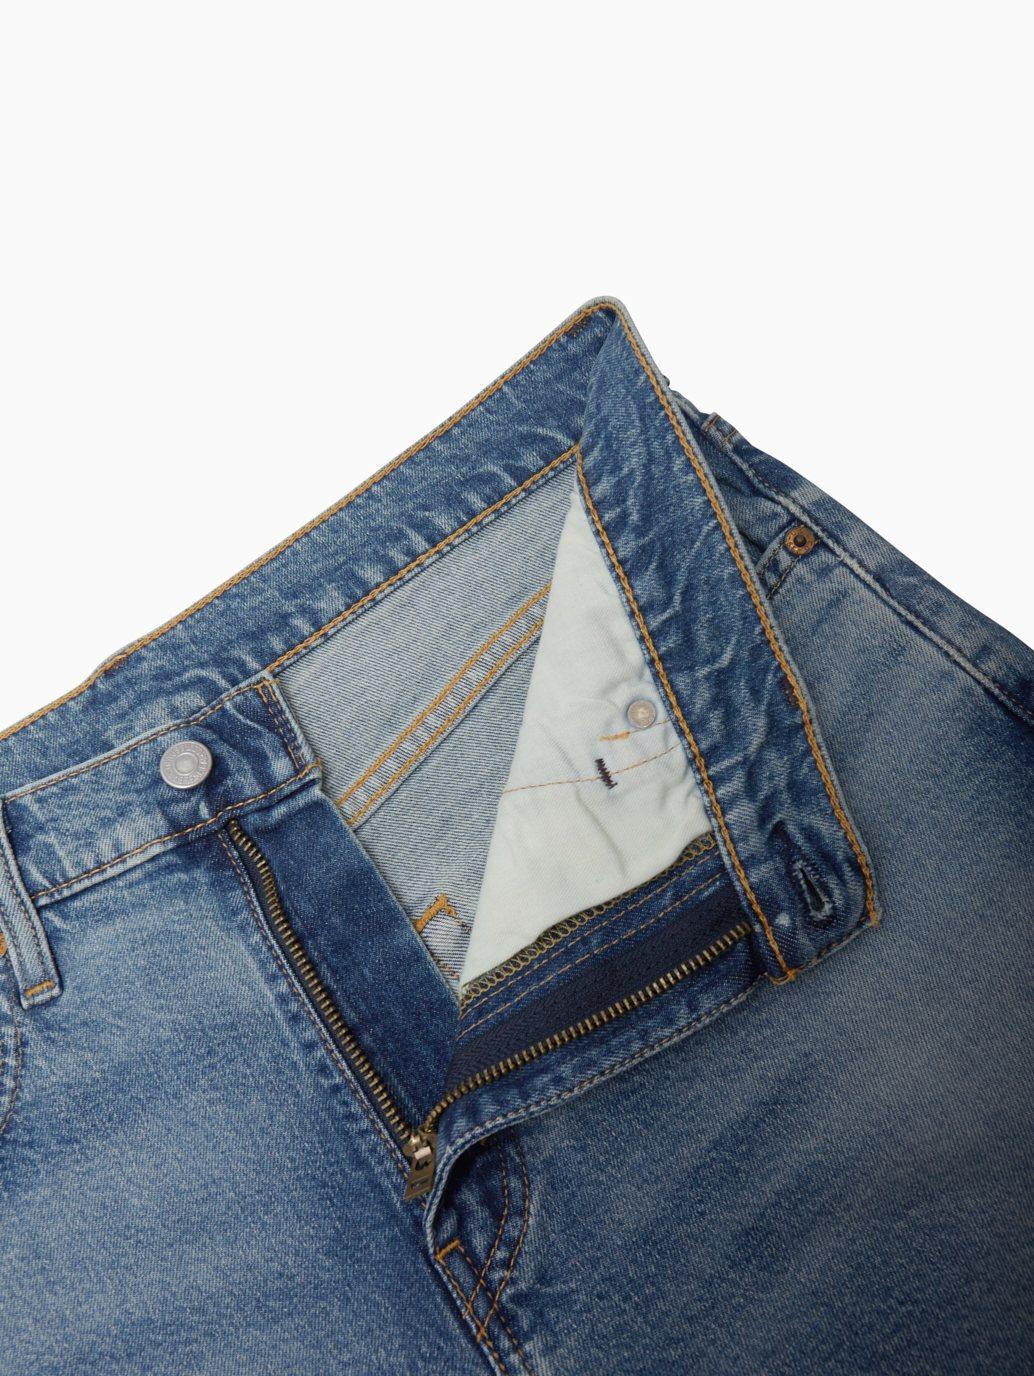 levis singapore mens 512 slim taper jeans 288330956 17 Details